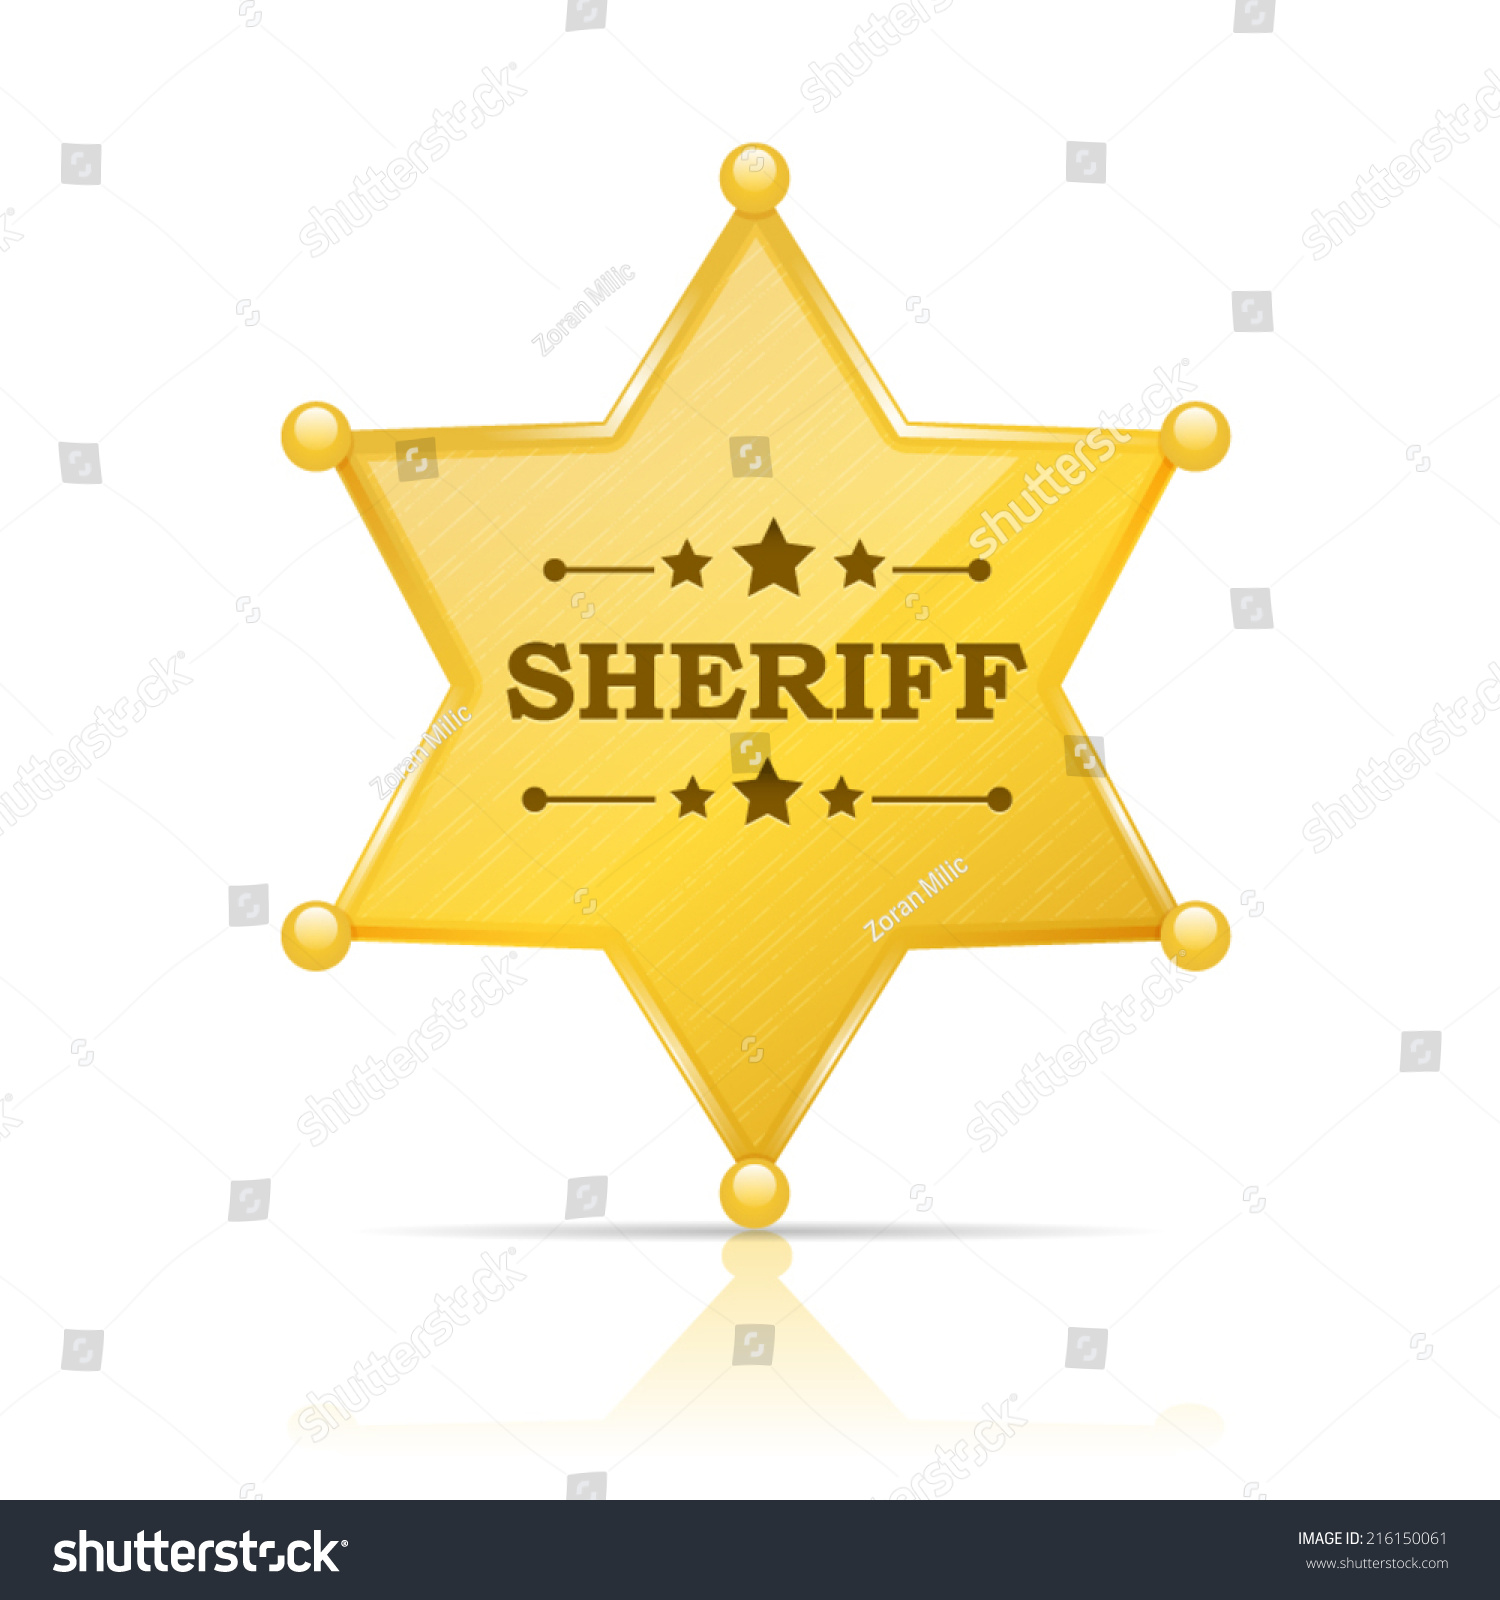 SVG of Golden sheriff star badge vector illustration isolated on white svg